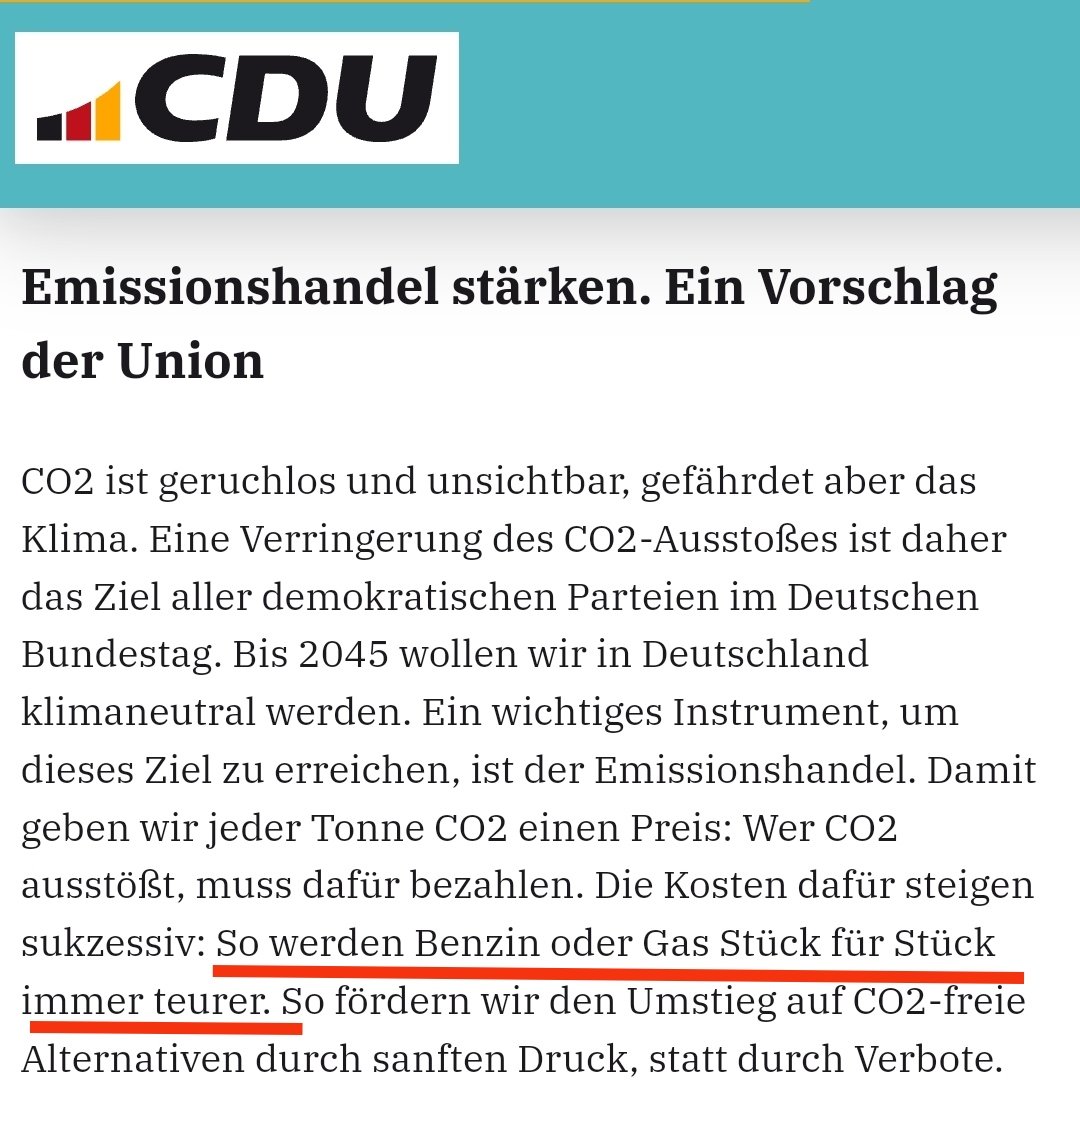 Also liebe #CDU-Wähler, eure Partei redet #Wärmepumpen schlecht und redet euch nochmal eine Gas- oder Ölheizung ein, nur um dann 2 Jahre später euch mit 'sanftem Druck' diese extrem zu verteuern! 🤷‍♂️

Die @Die_Gruenen reden viel ehrlicher jetzt schon pro #Wärmepumpe inkl Förderung